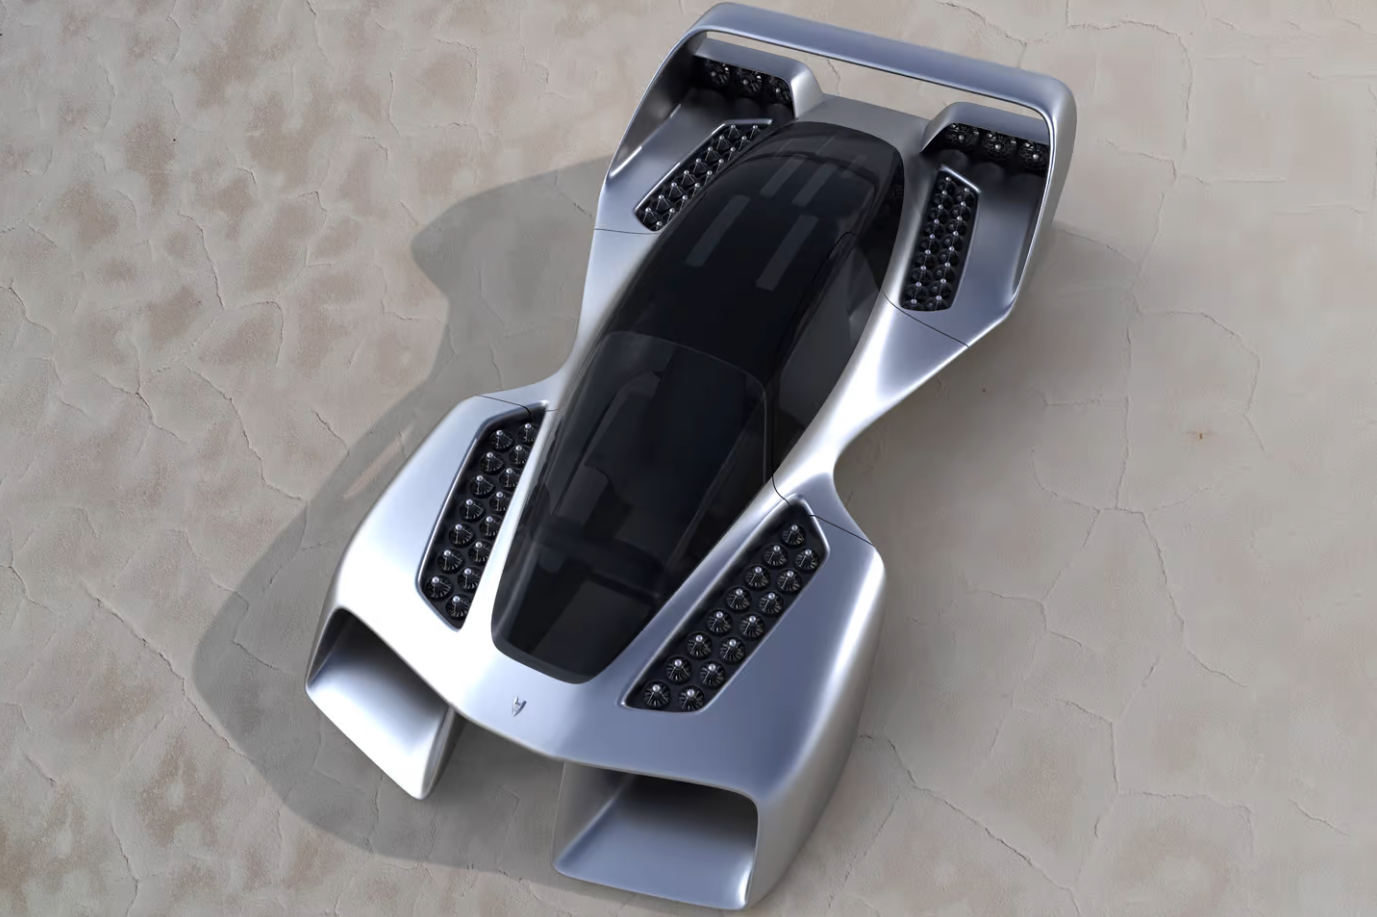 LEO Coupe - latający samochód z silnikami odrzutowymi i maksymalną prędkością 400 km/h